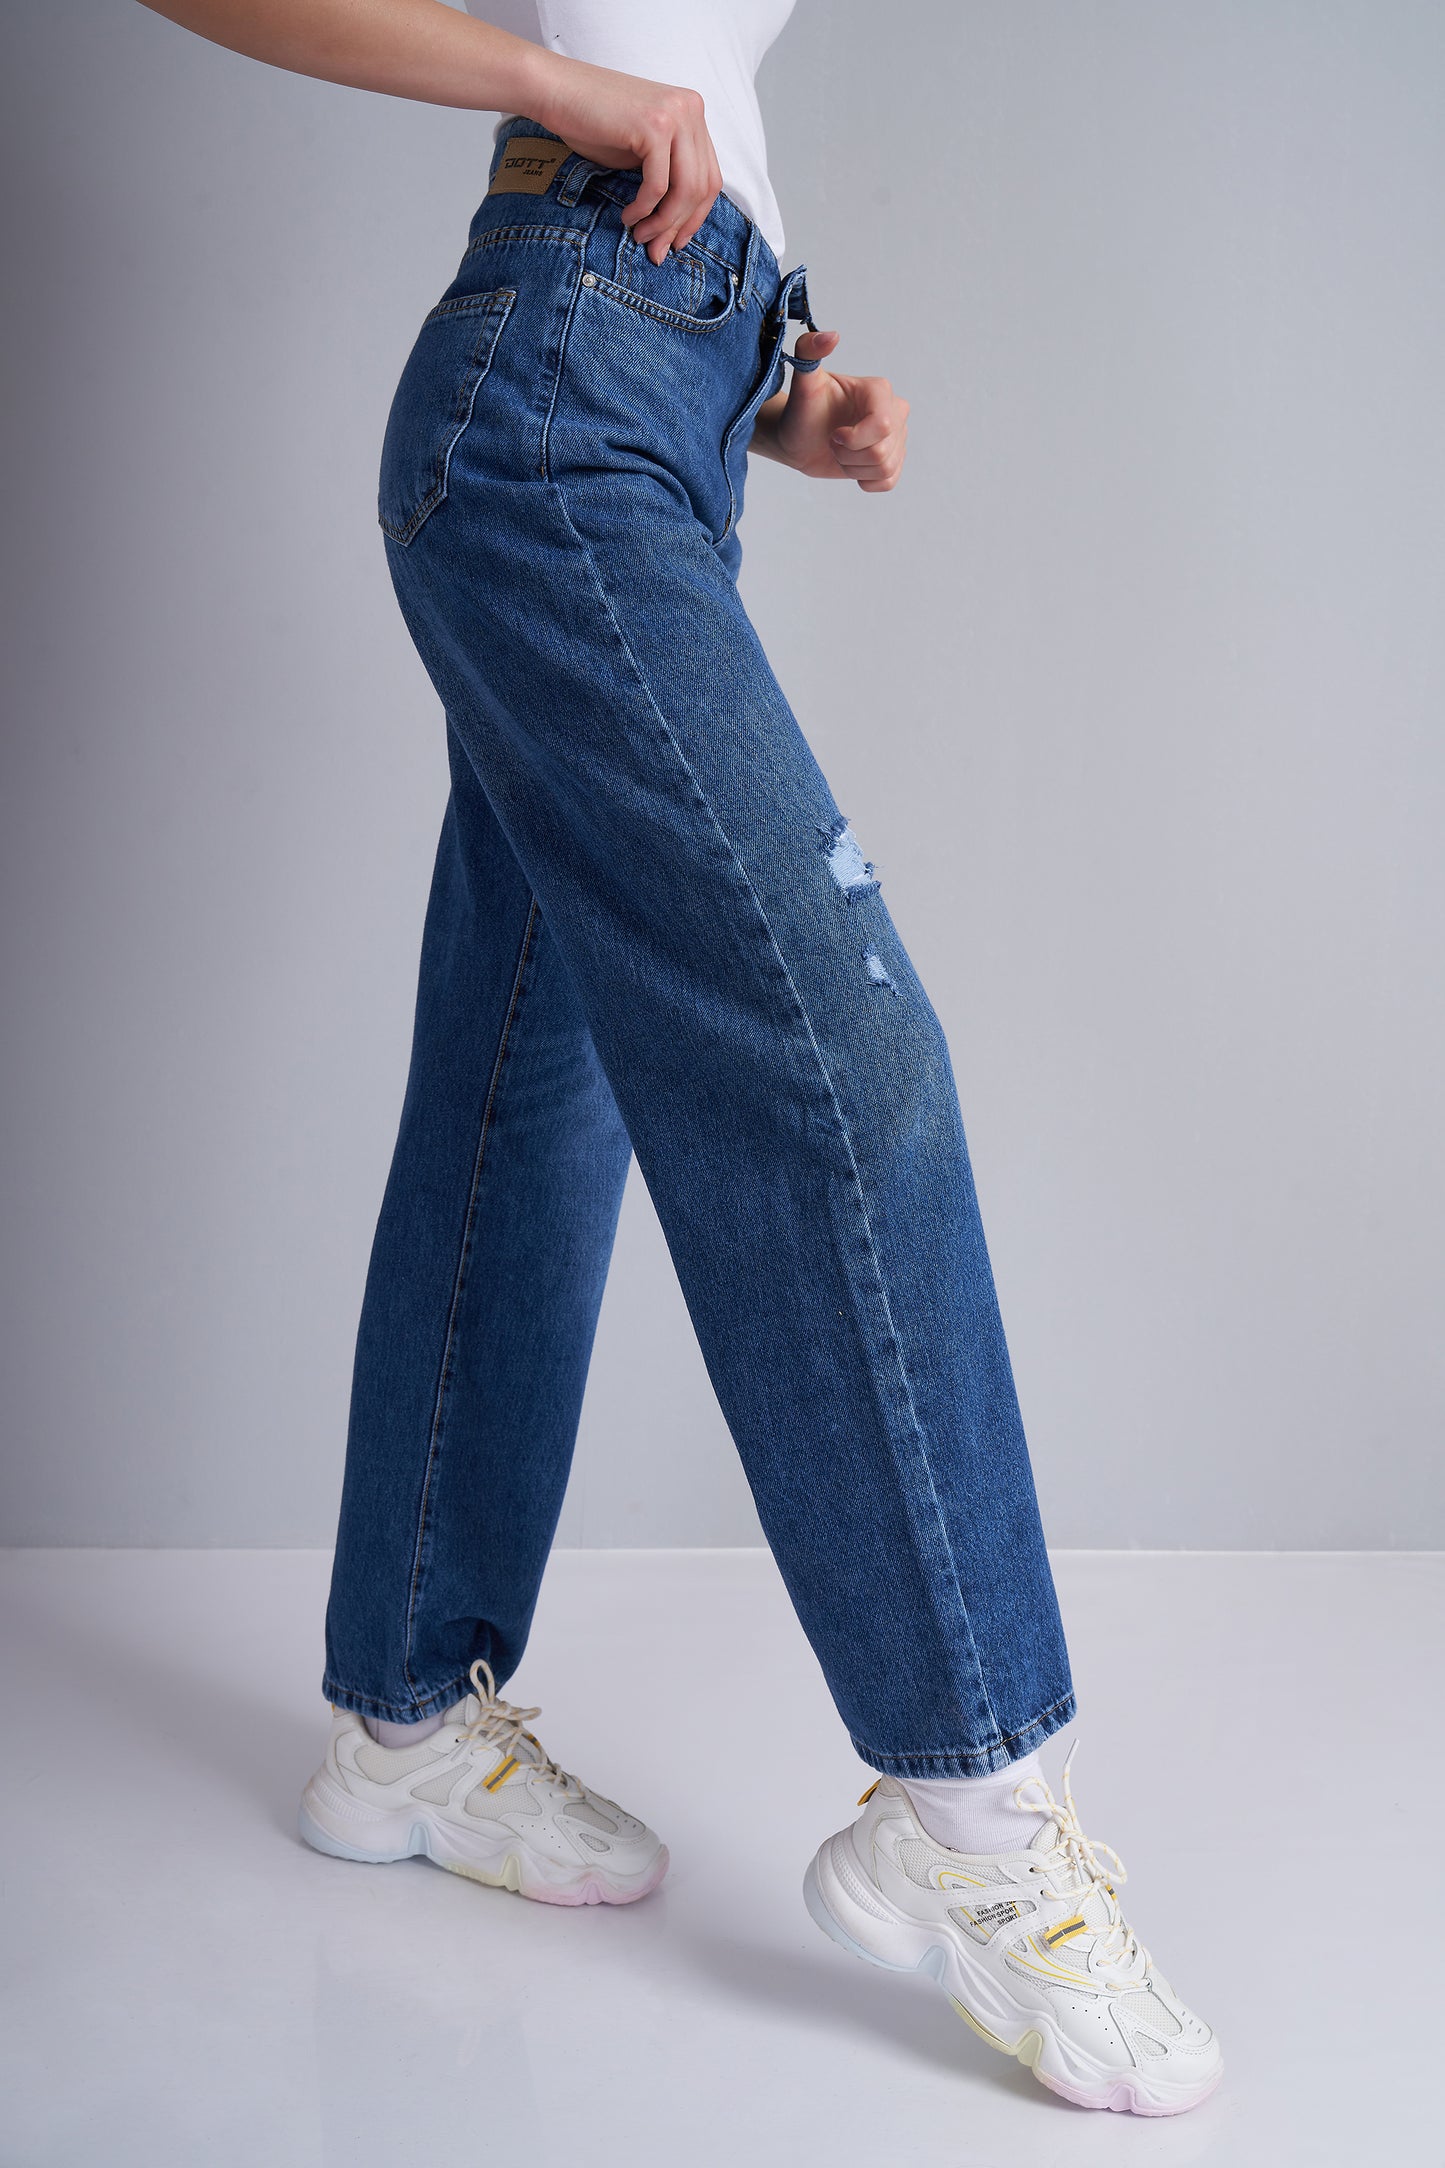 Jeans trousers - (wide leg cut)